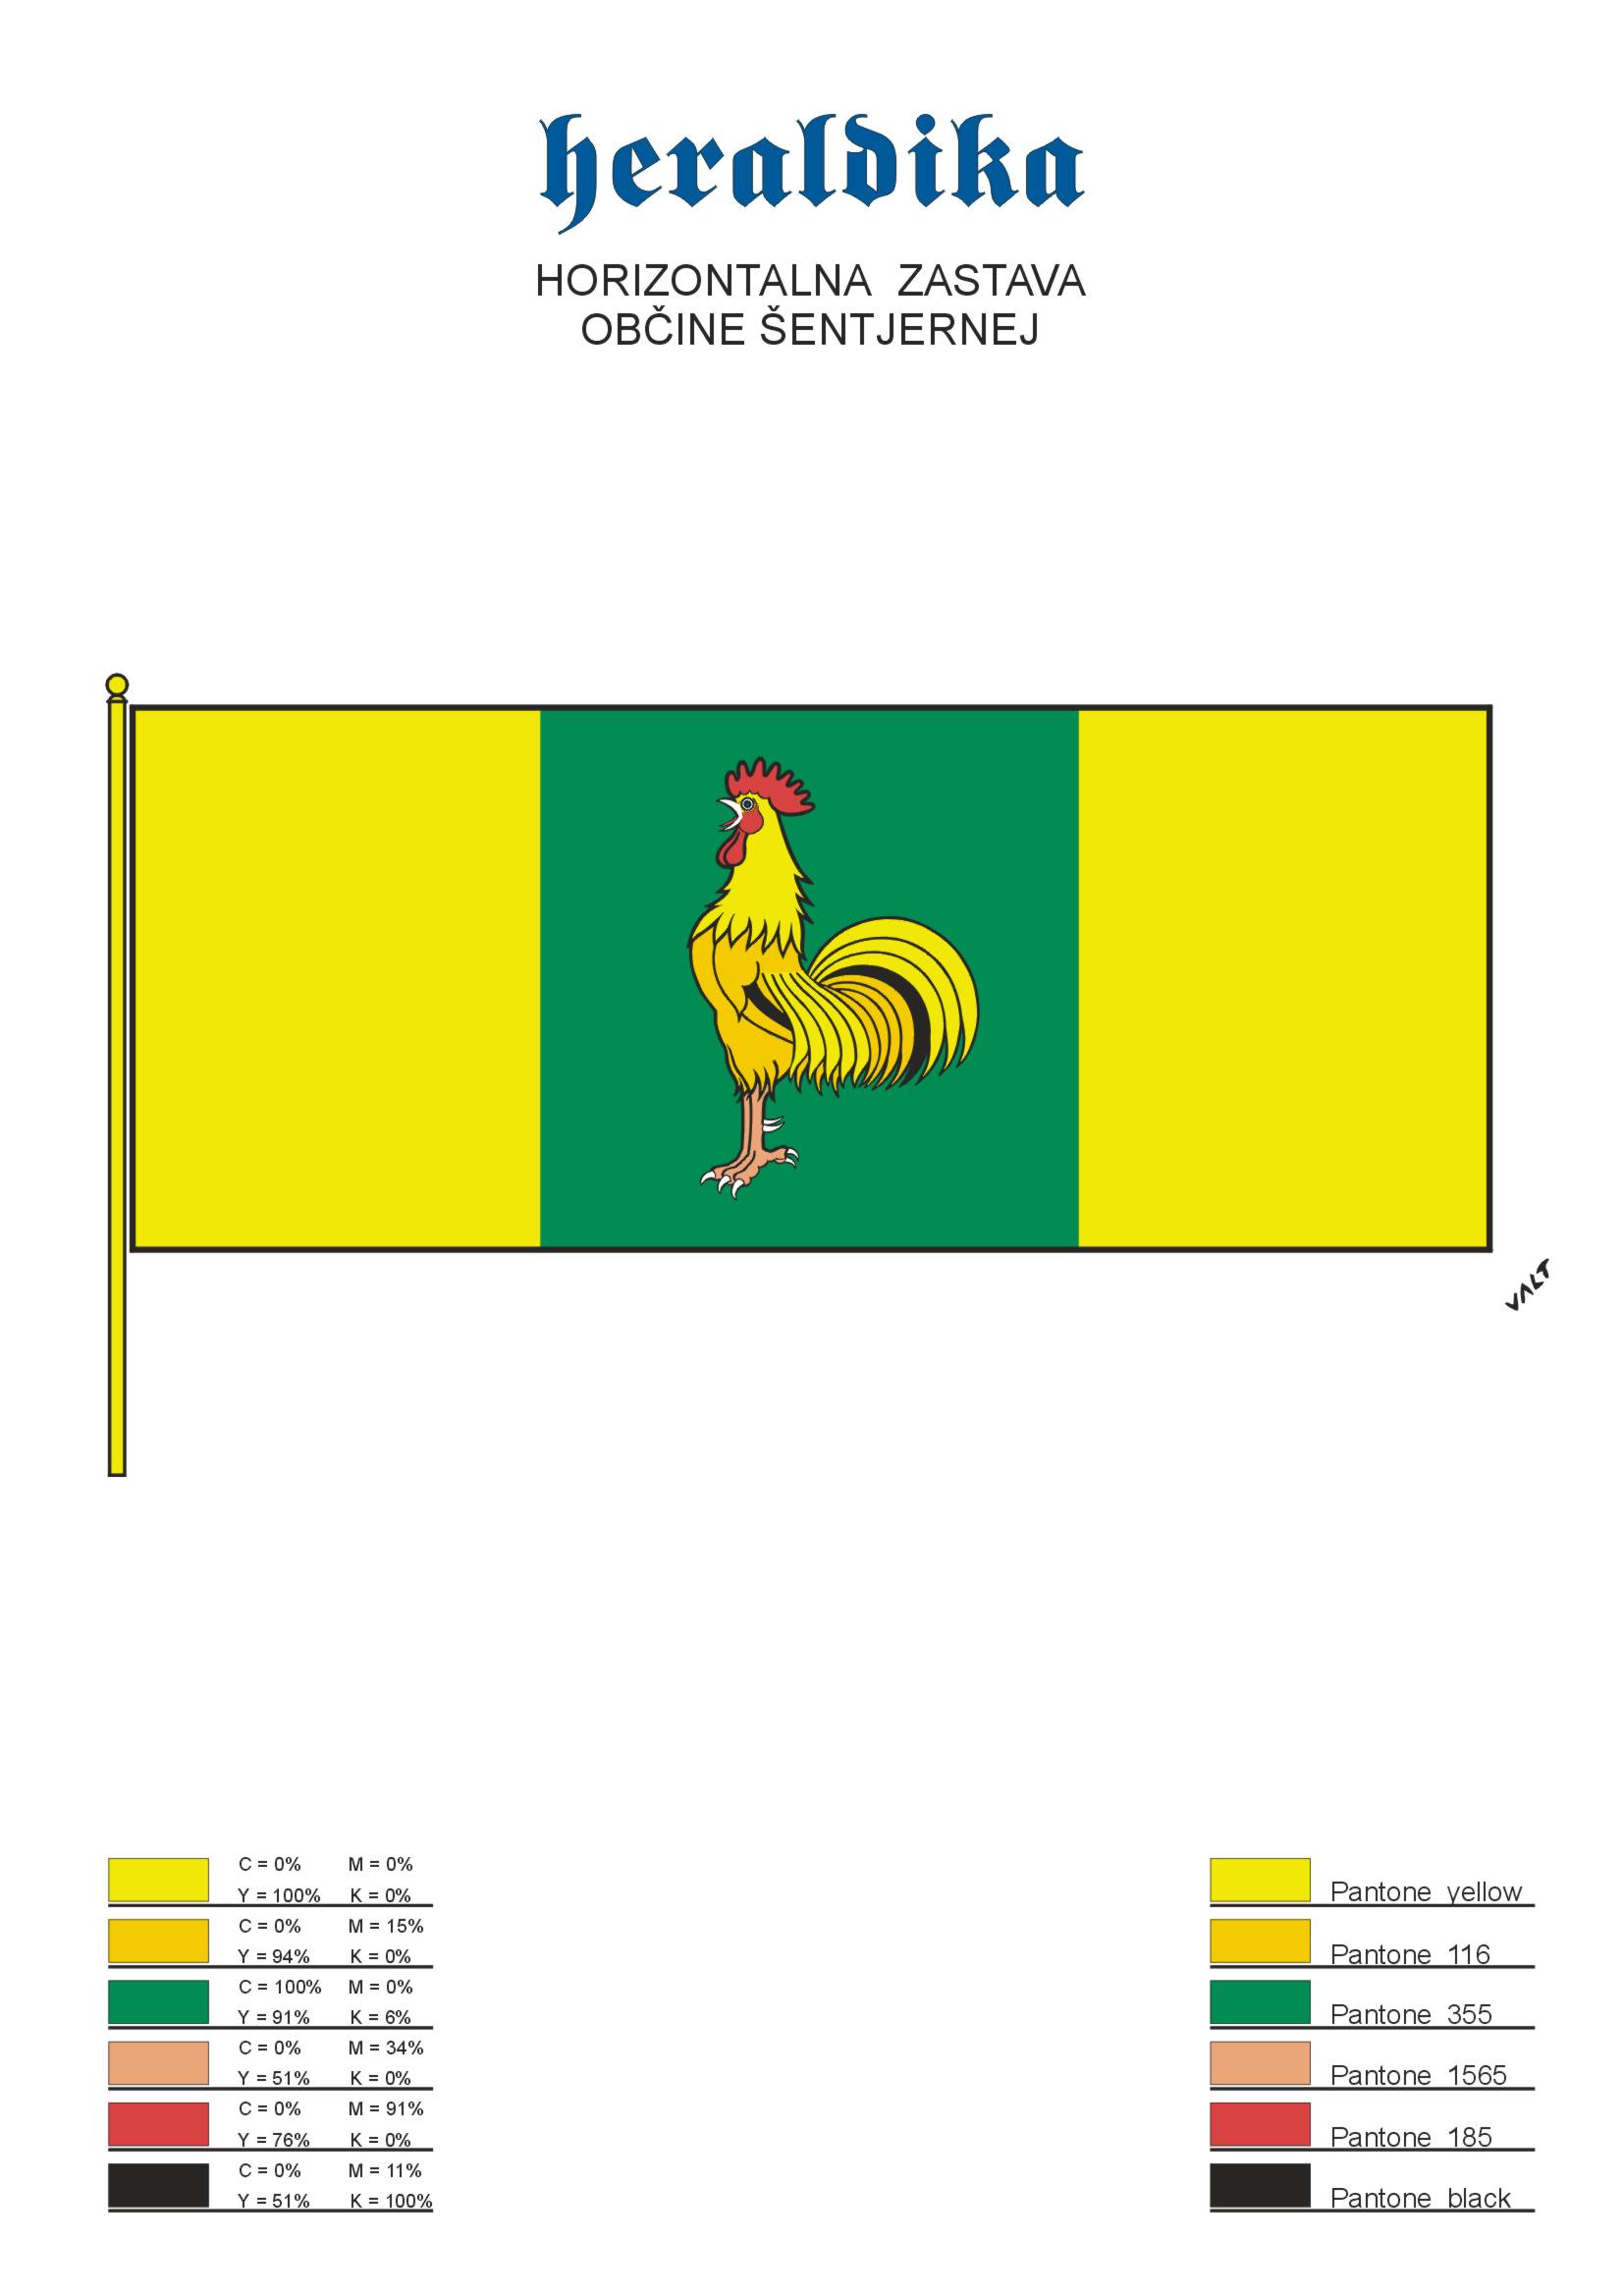 Horizontalna zastava.jpg